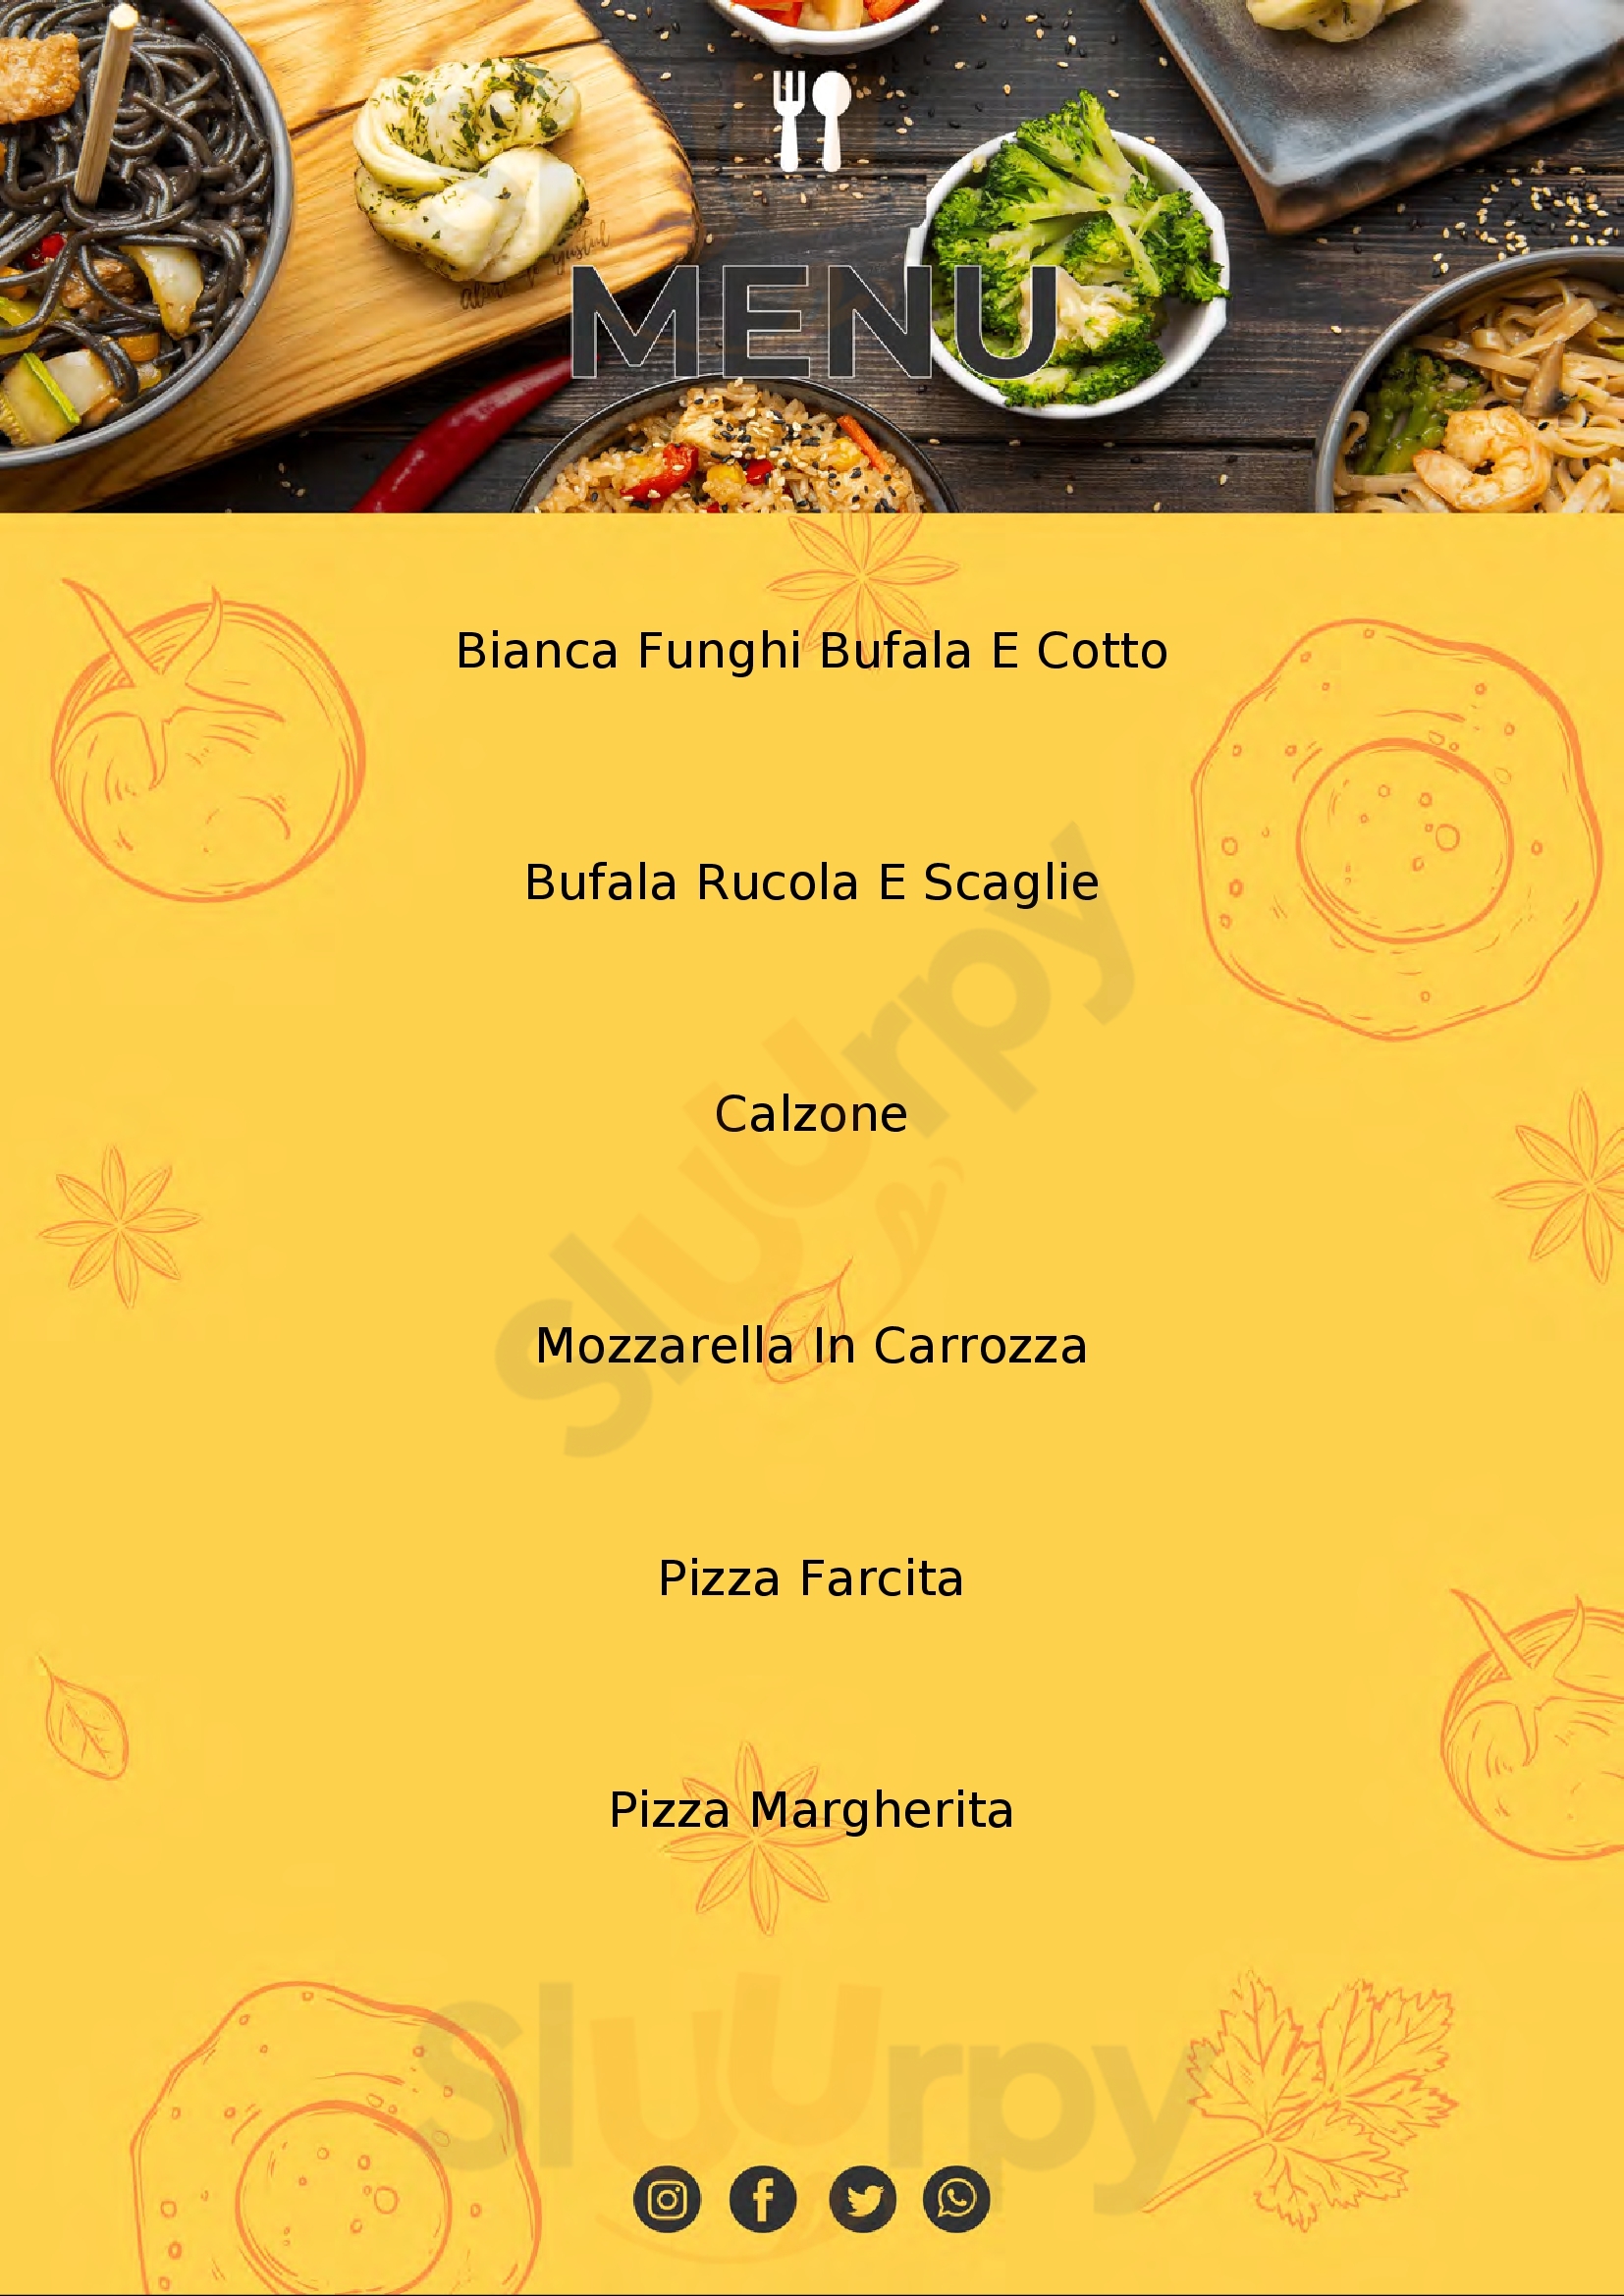 Rodris Pizza Reggio Calabria menù 1 pagina